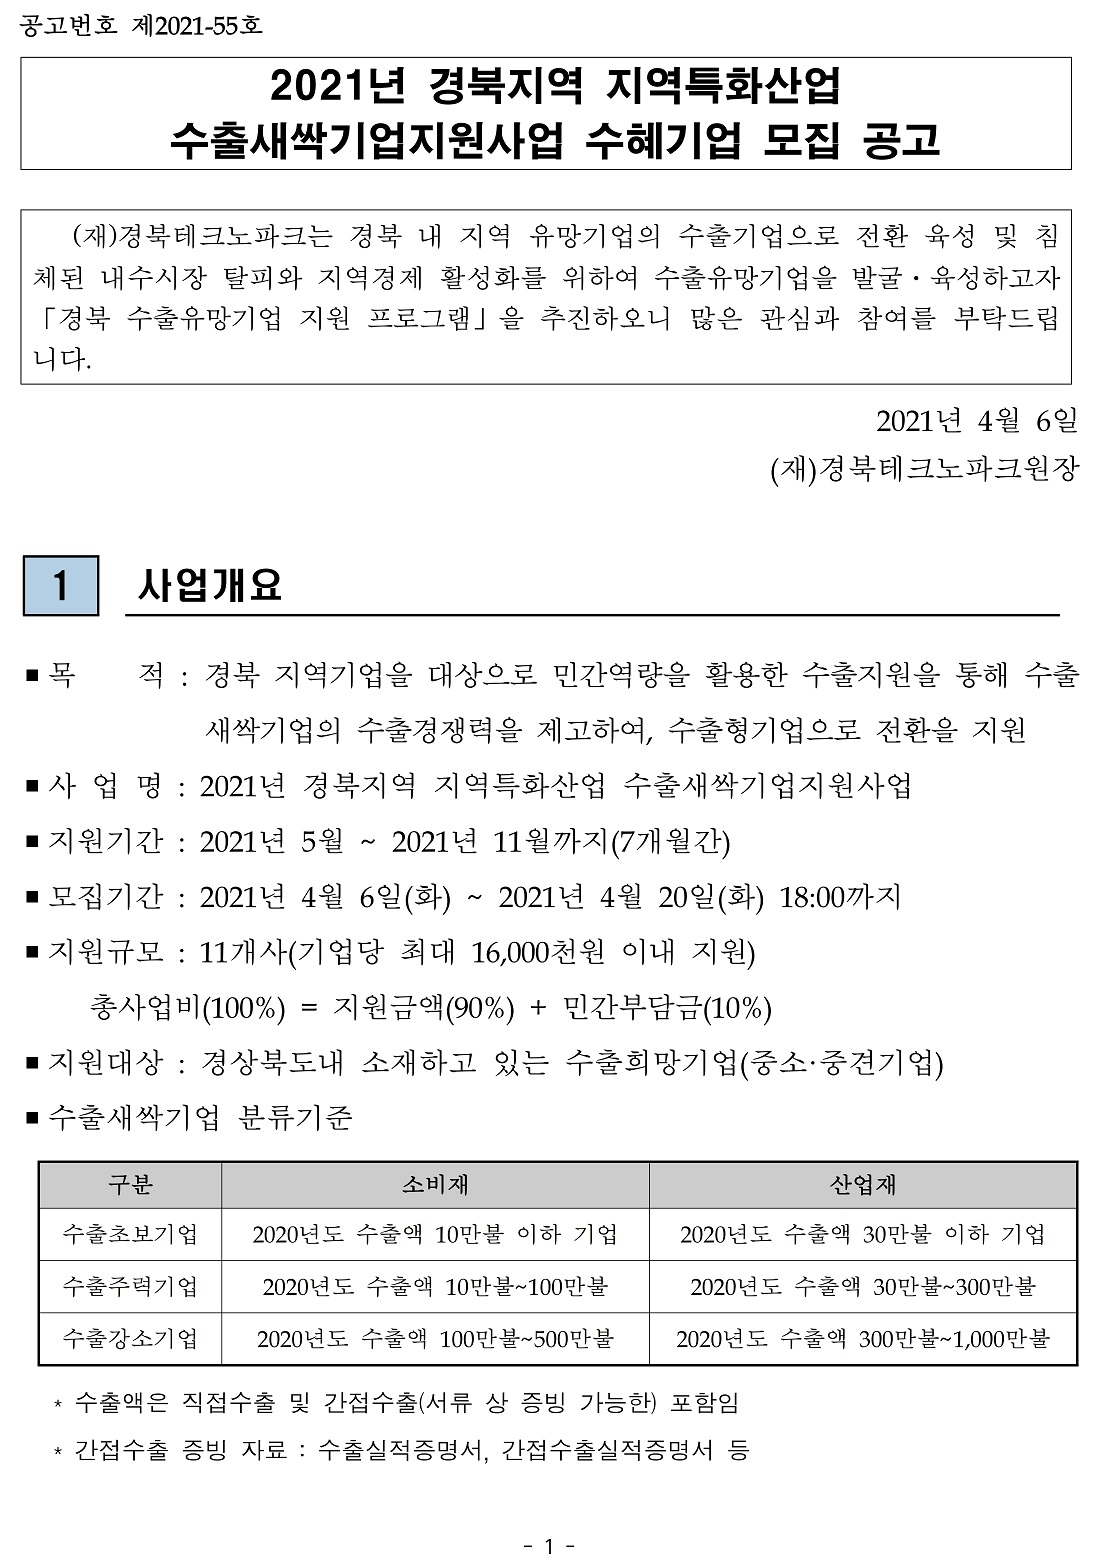 붙임1) 2021년 경북지역 지역특화산업 수출새싹기업지원사업 수혜기업 모집 공고문.pdf_page_1.jpg 이미지입니다.